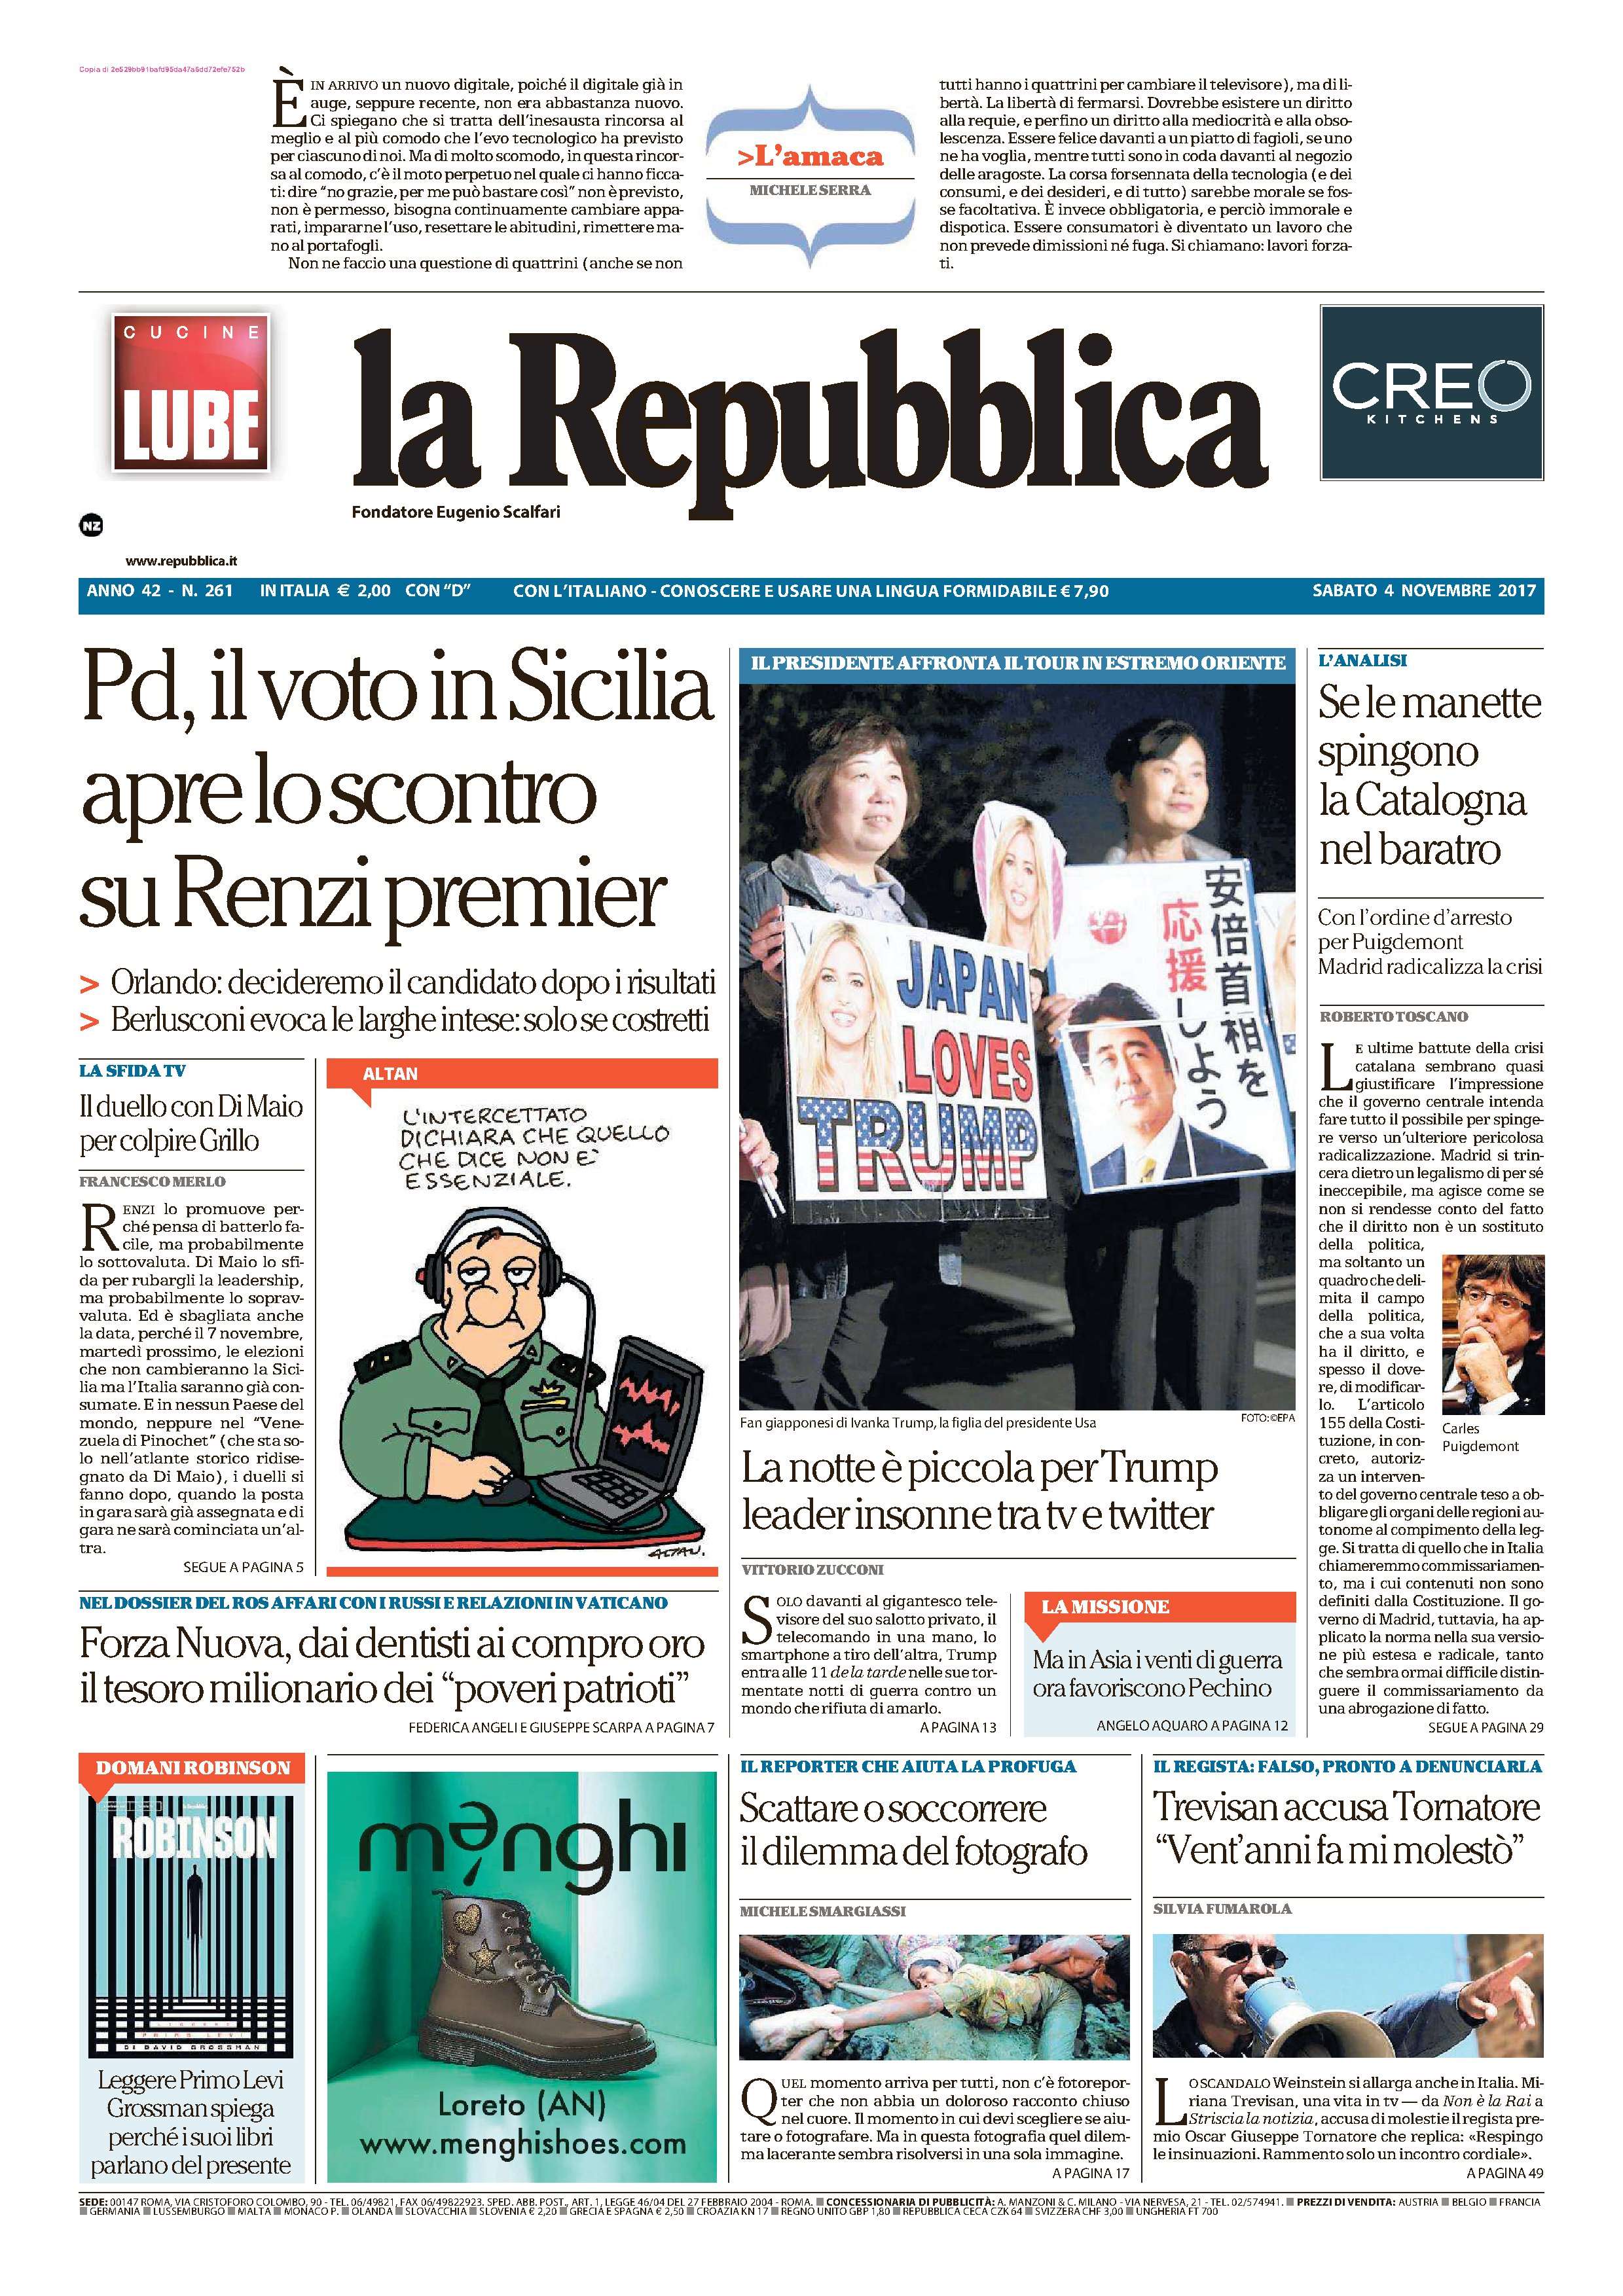 La Repubblica ITA 2017-11-4 Cover